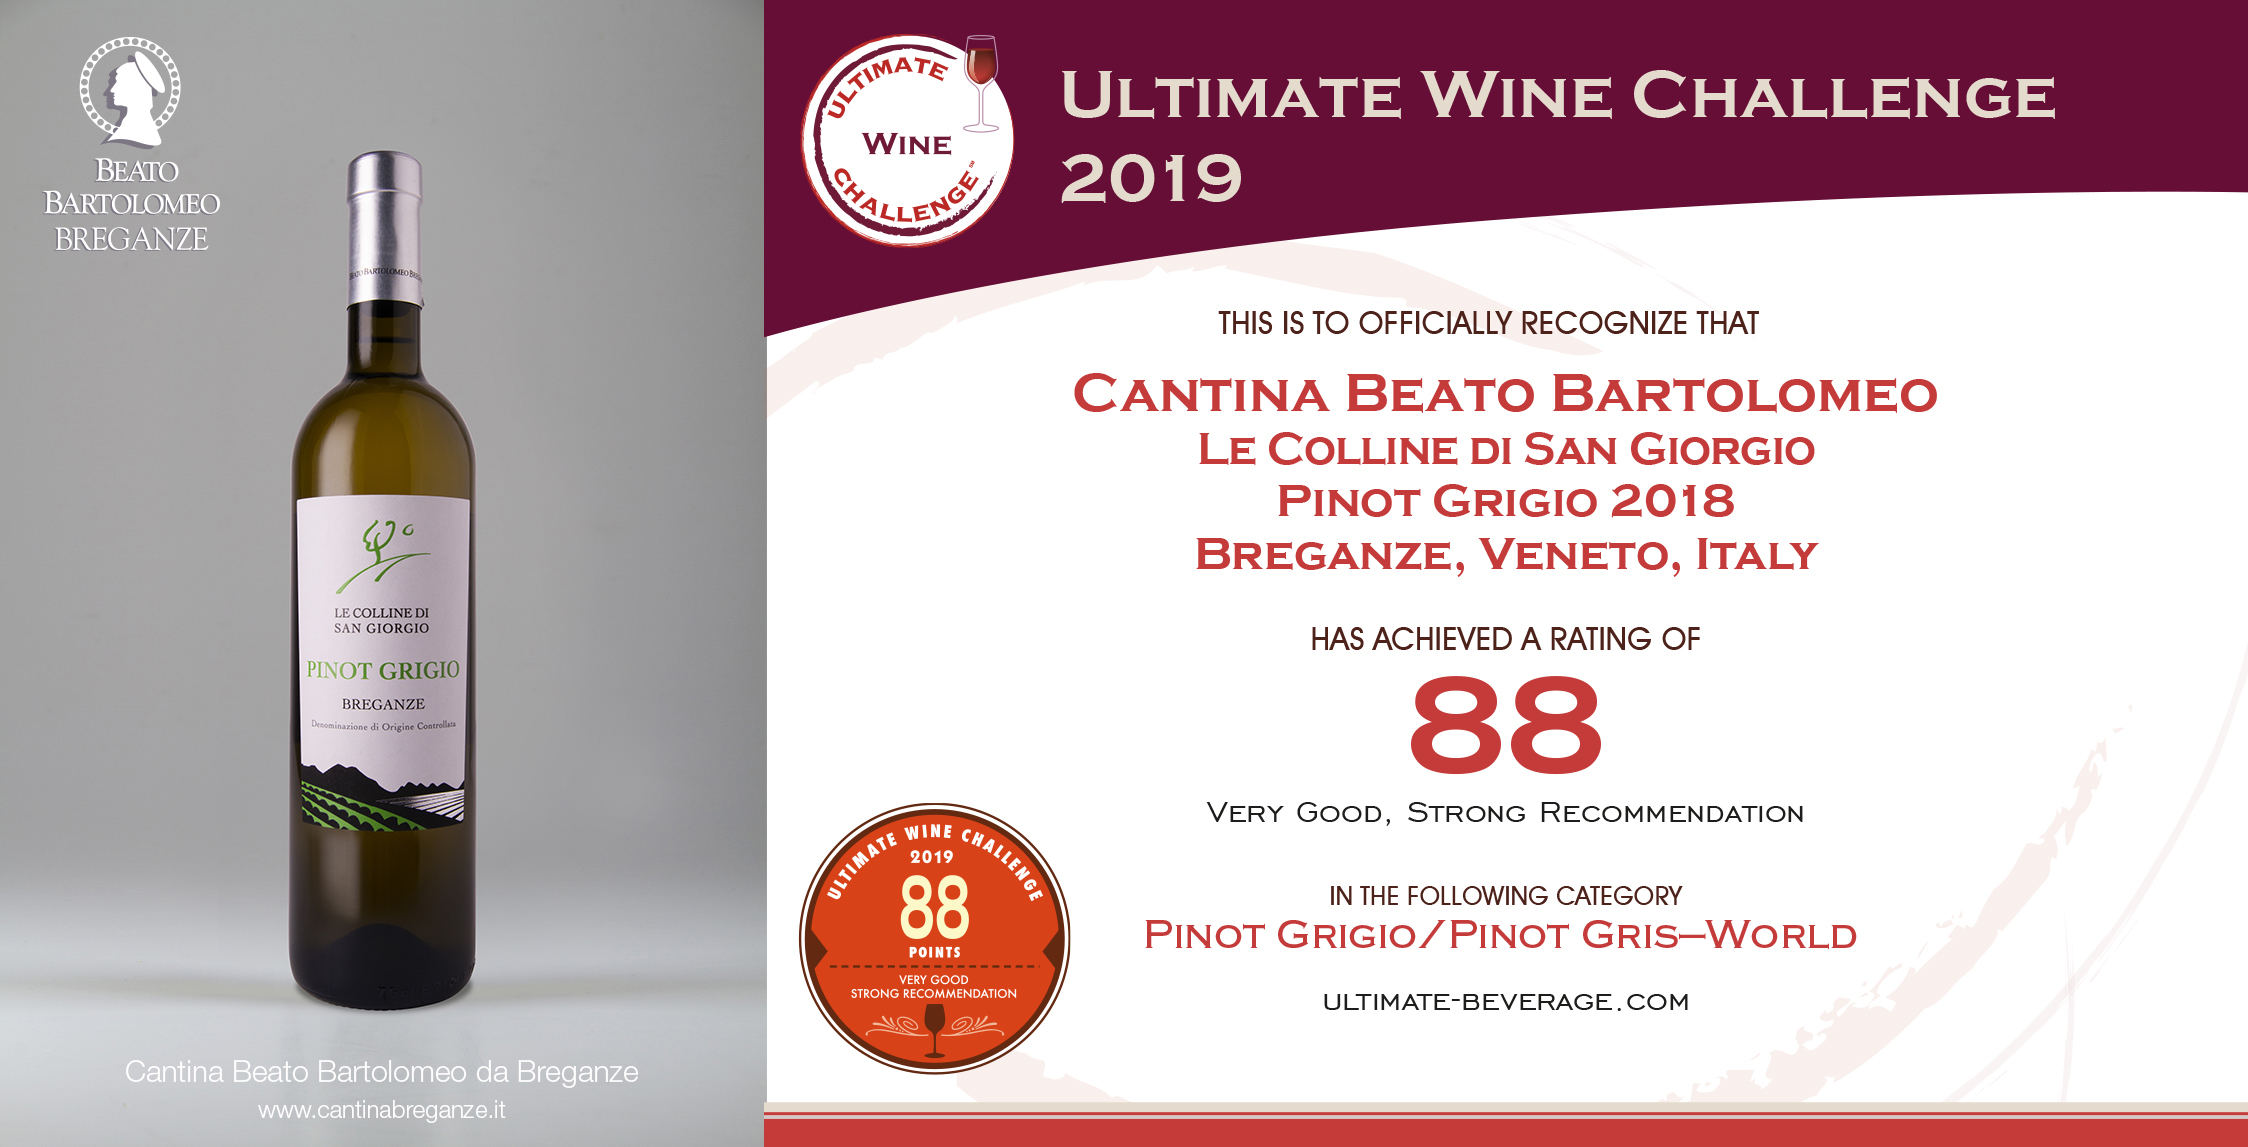 Pinot Grigio Breganze DOC “Le Colline di San Giorgio” Ultimate Wine Challenge 2019